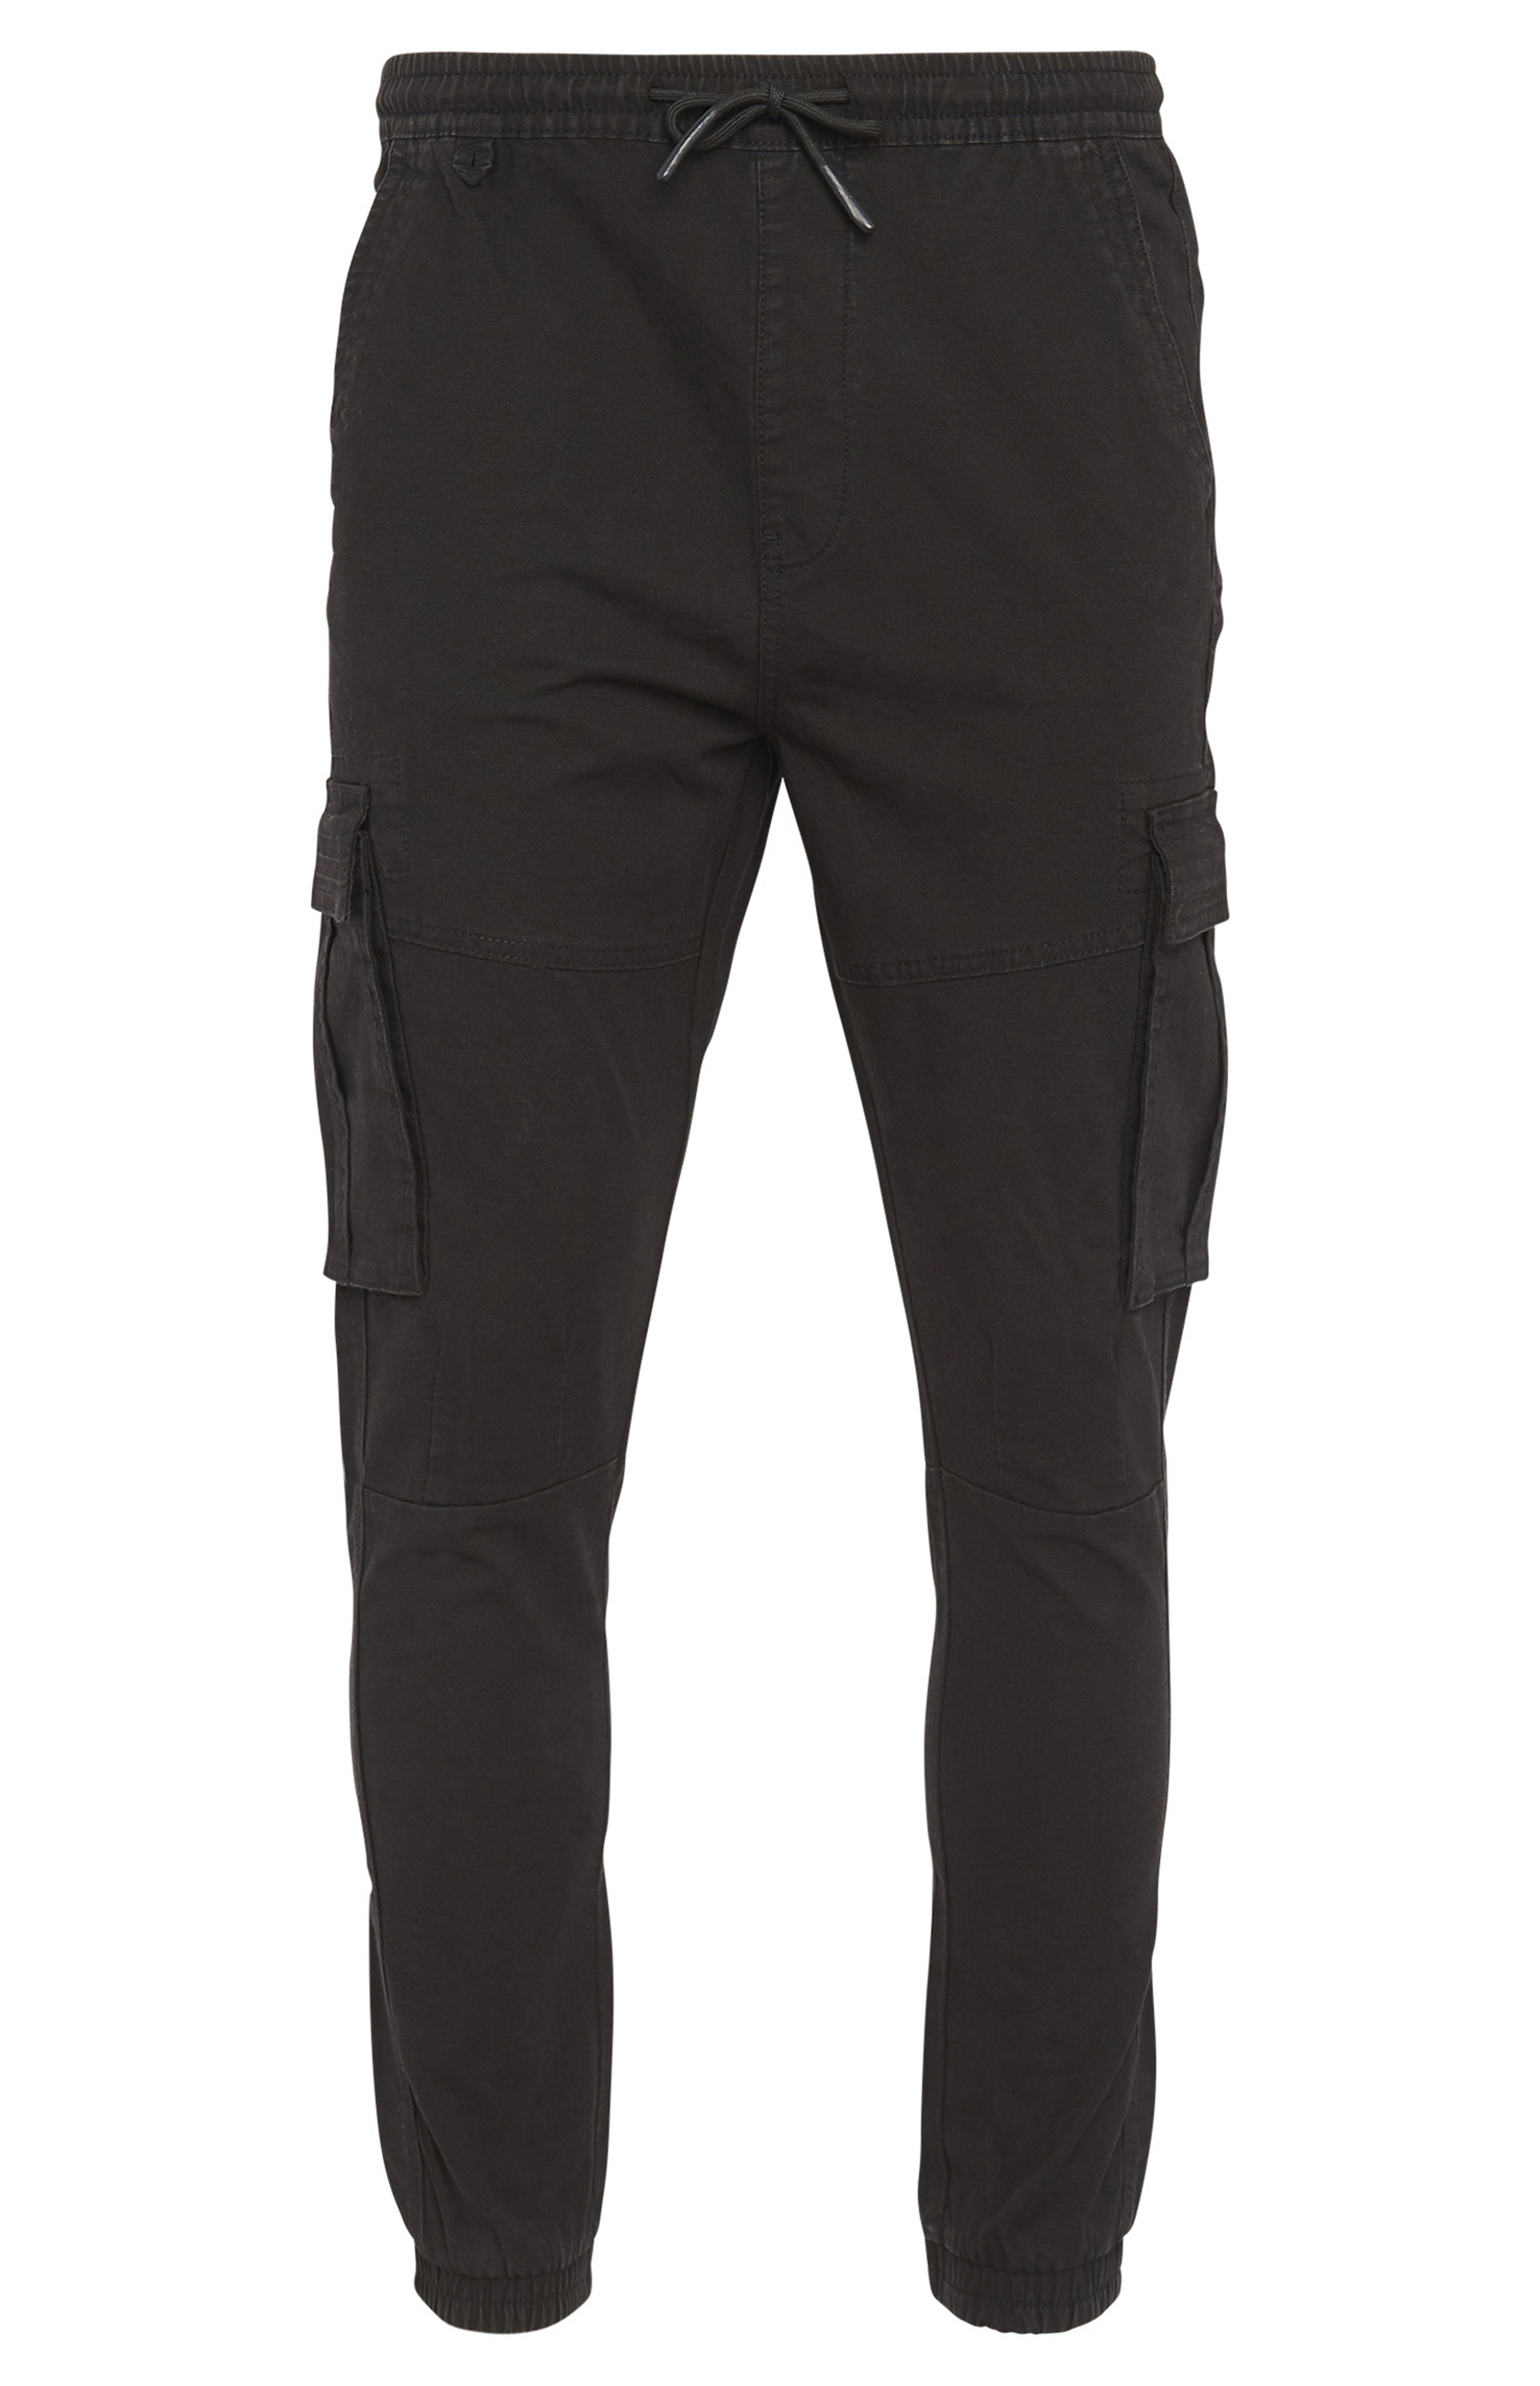 black cuffed cargo pants